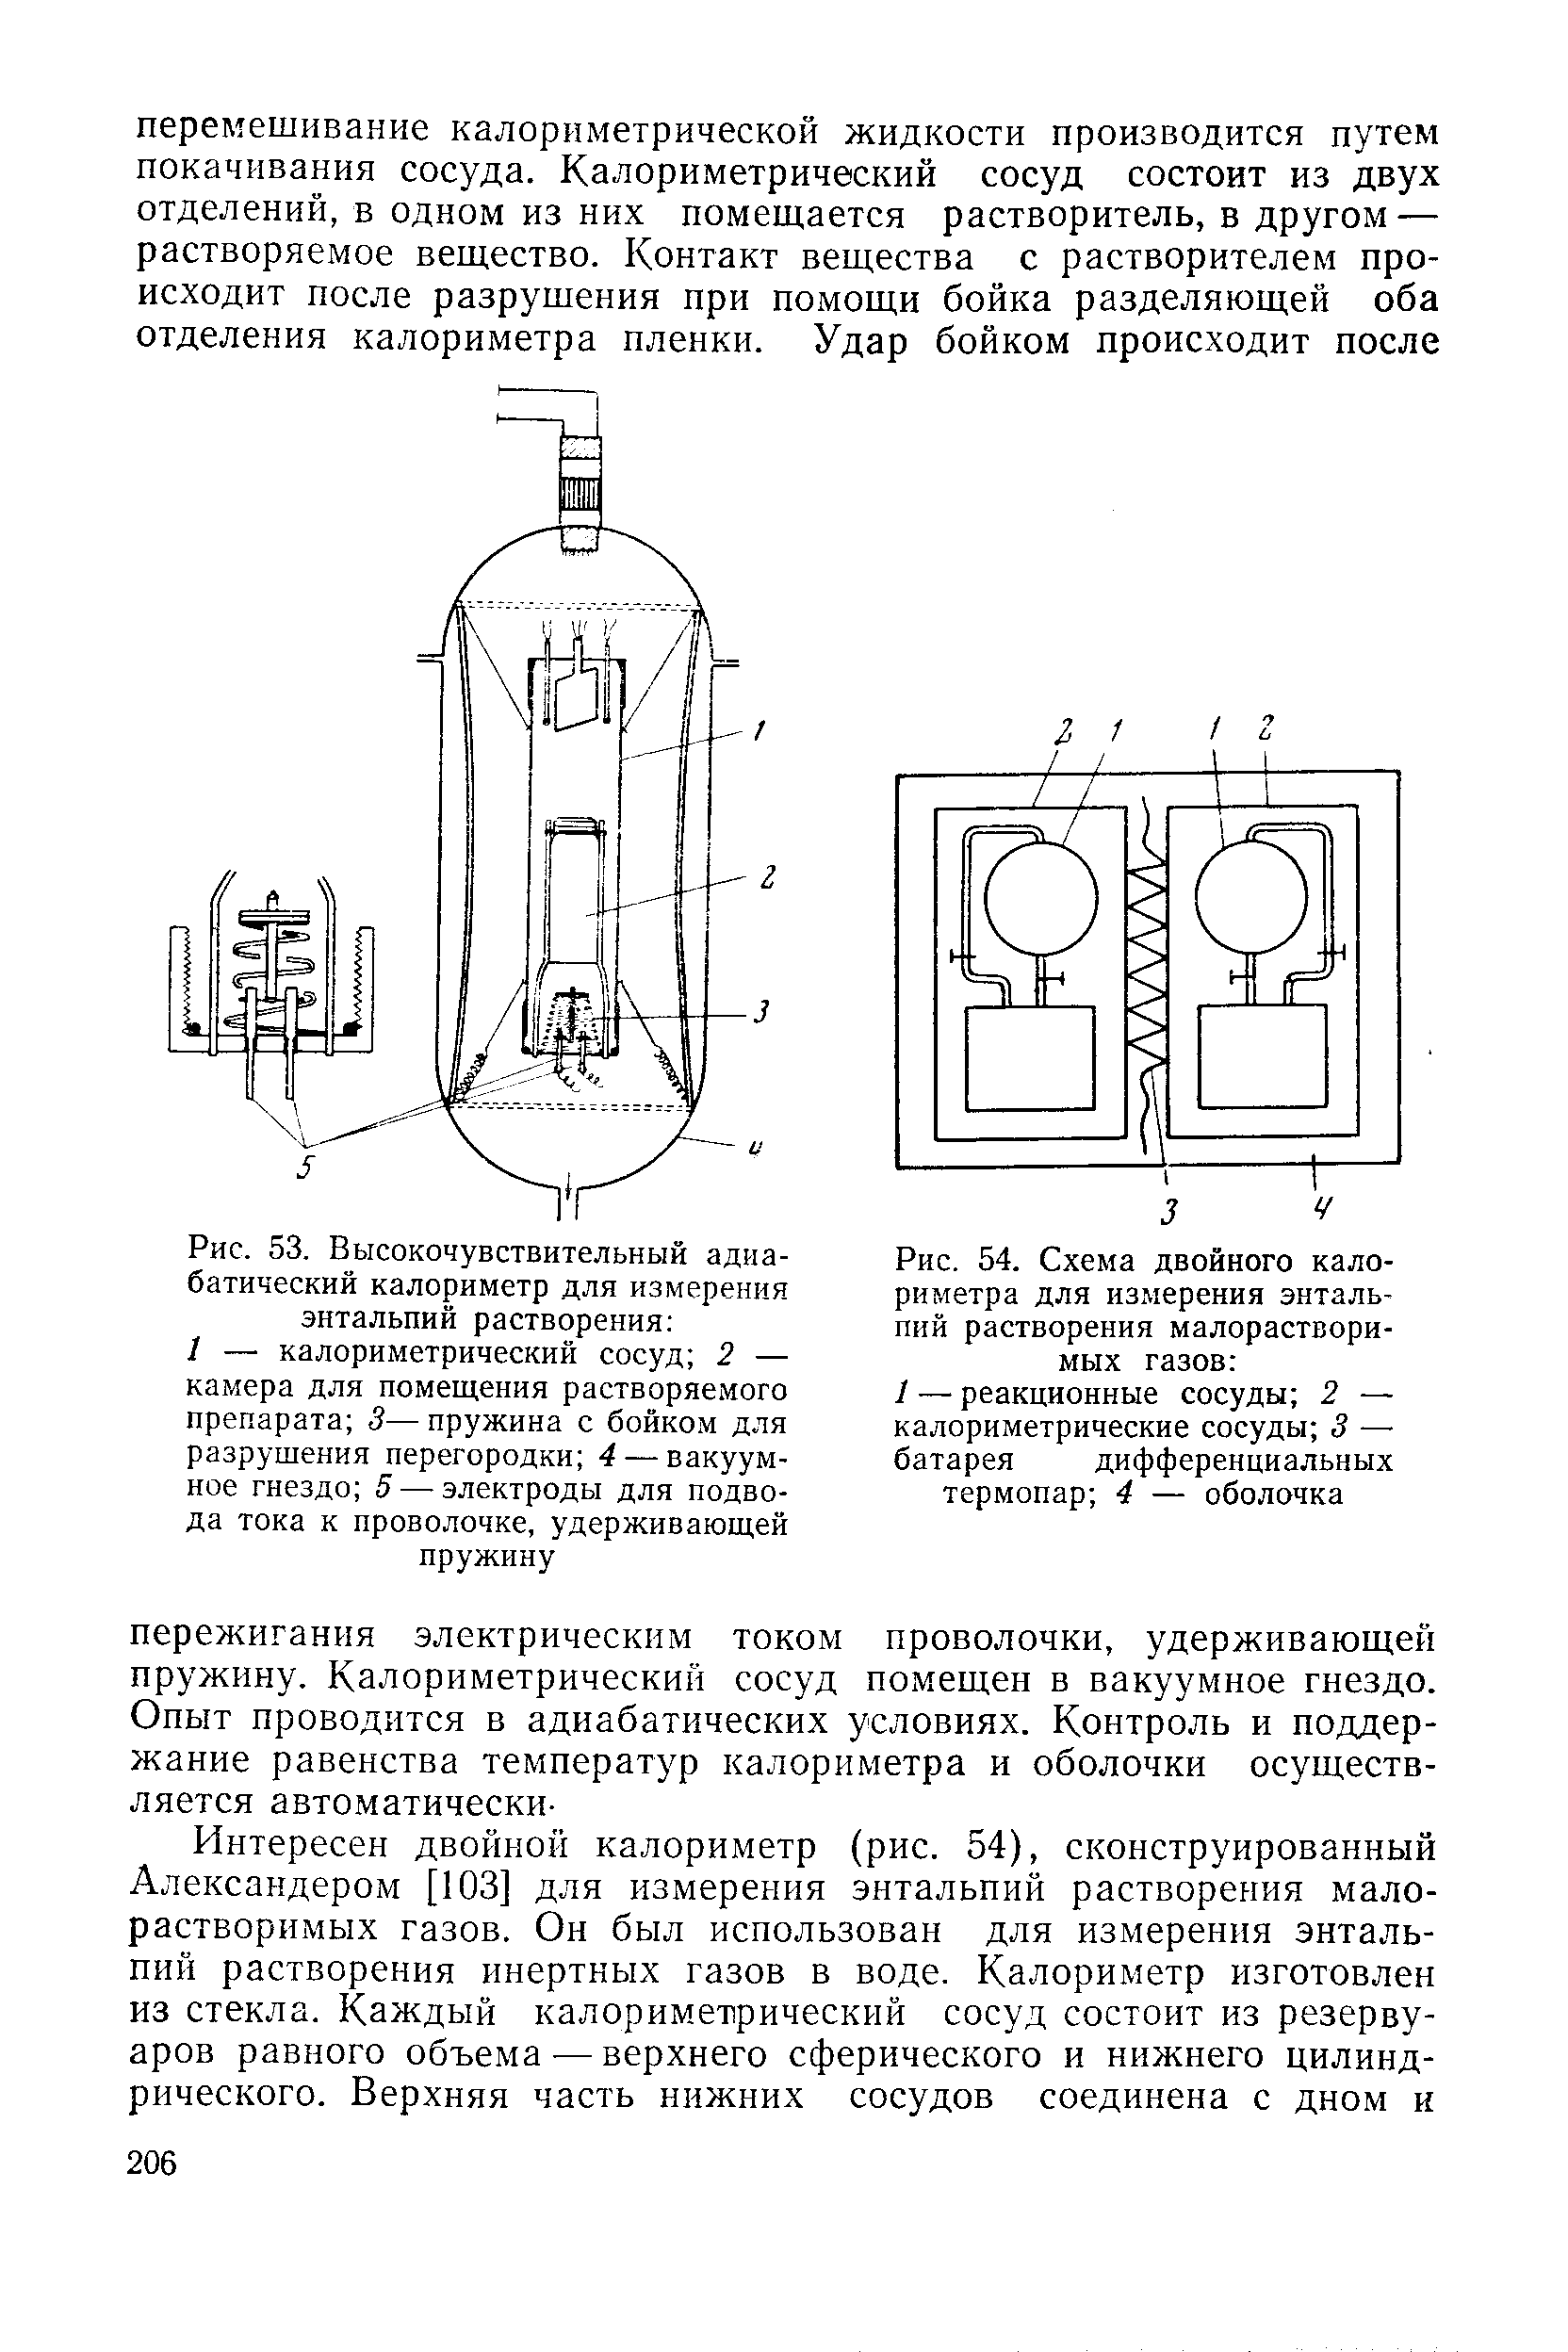 Рис. 54. Схема двойного калориметра для измерения энтальпий растворения малорастворимых газов 
